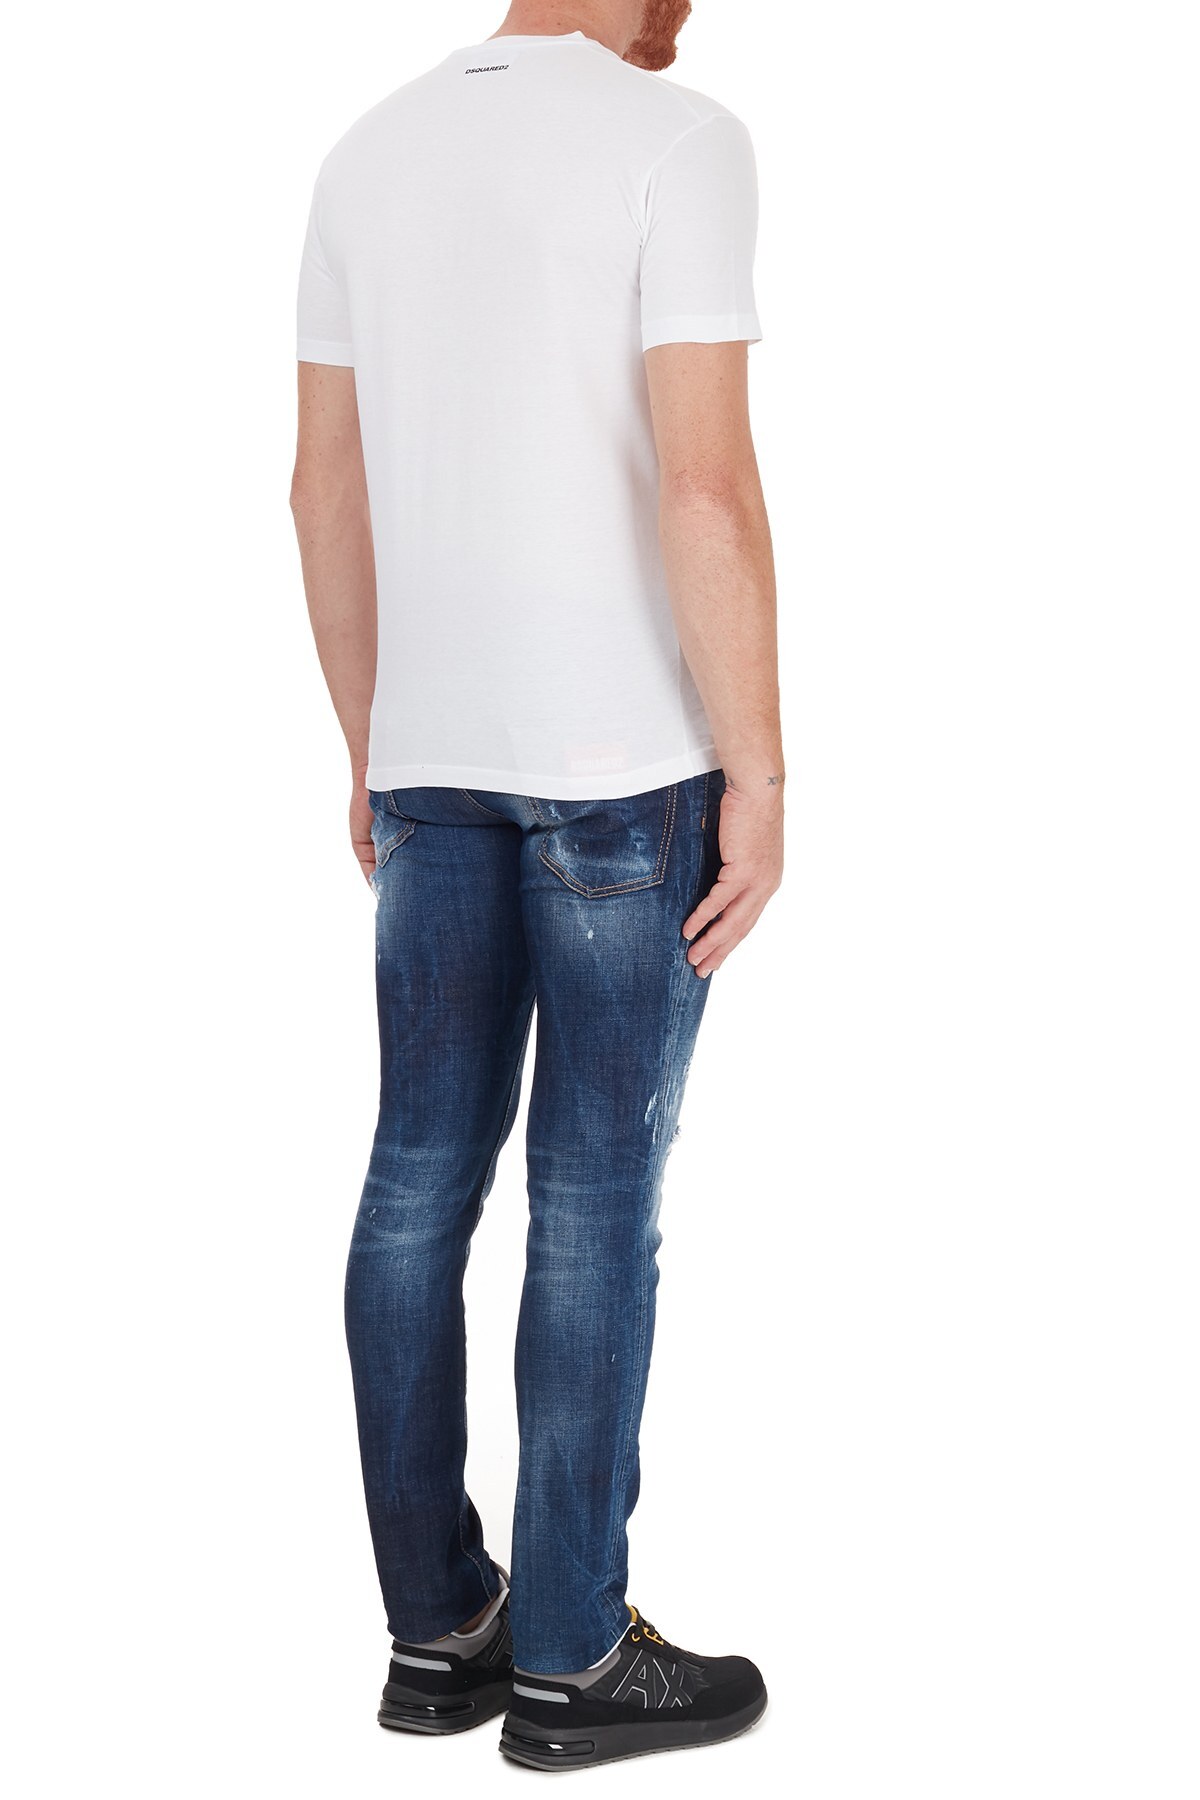 Dsquared2 Slim Fit Pamuklu Jeans Erkek Kot Pantolon S71LB0779 S30664 470 MAVİ